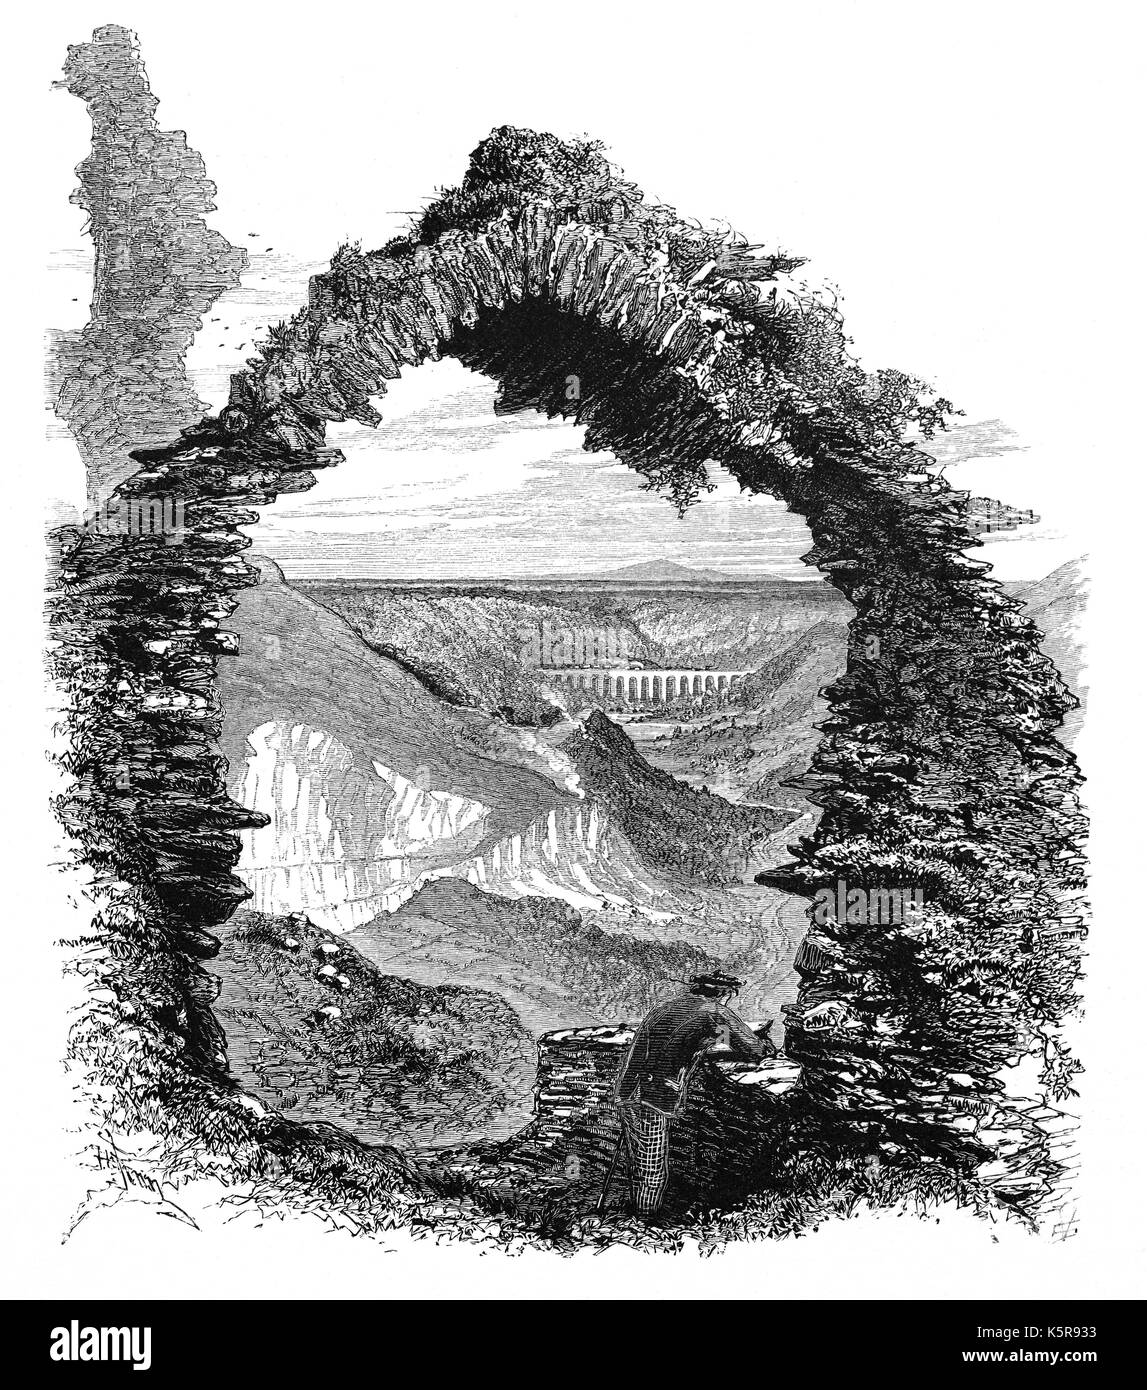 1870: l'Acquedotto Pontcysyllte che porta il Llangollen Canal attraverso il fiume Dee, visto attraverso un arco in rovina di Castell Dinas Brân. Il castello medievale, edificato probabilmente nel 1260, occupa un importante sito sulla collina sopra la città di Llangollen in Denbighshire, il Galles del Nord. Foto Stock